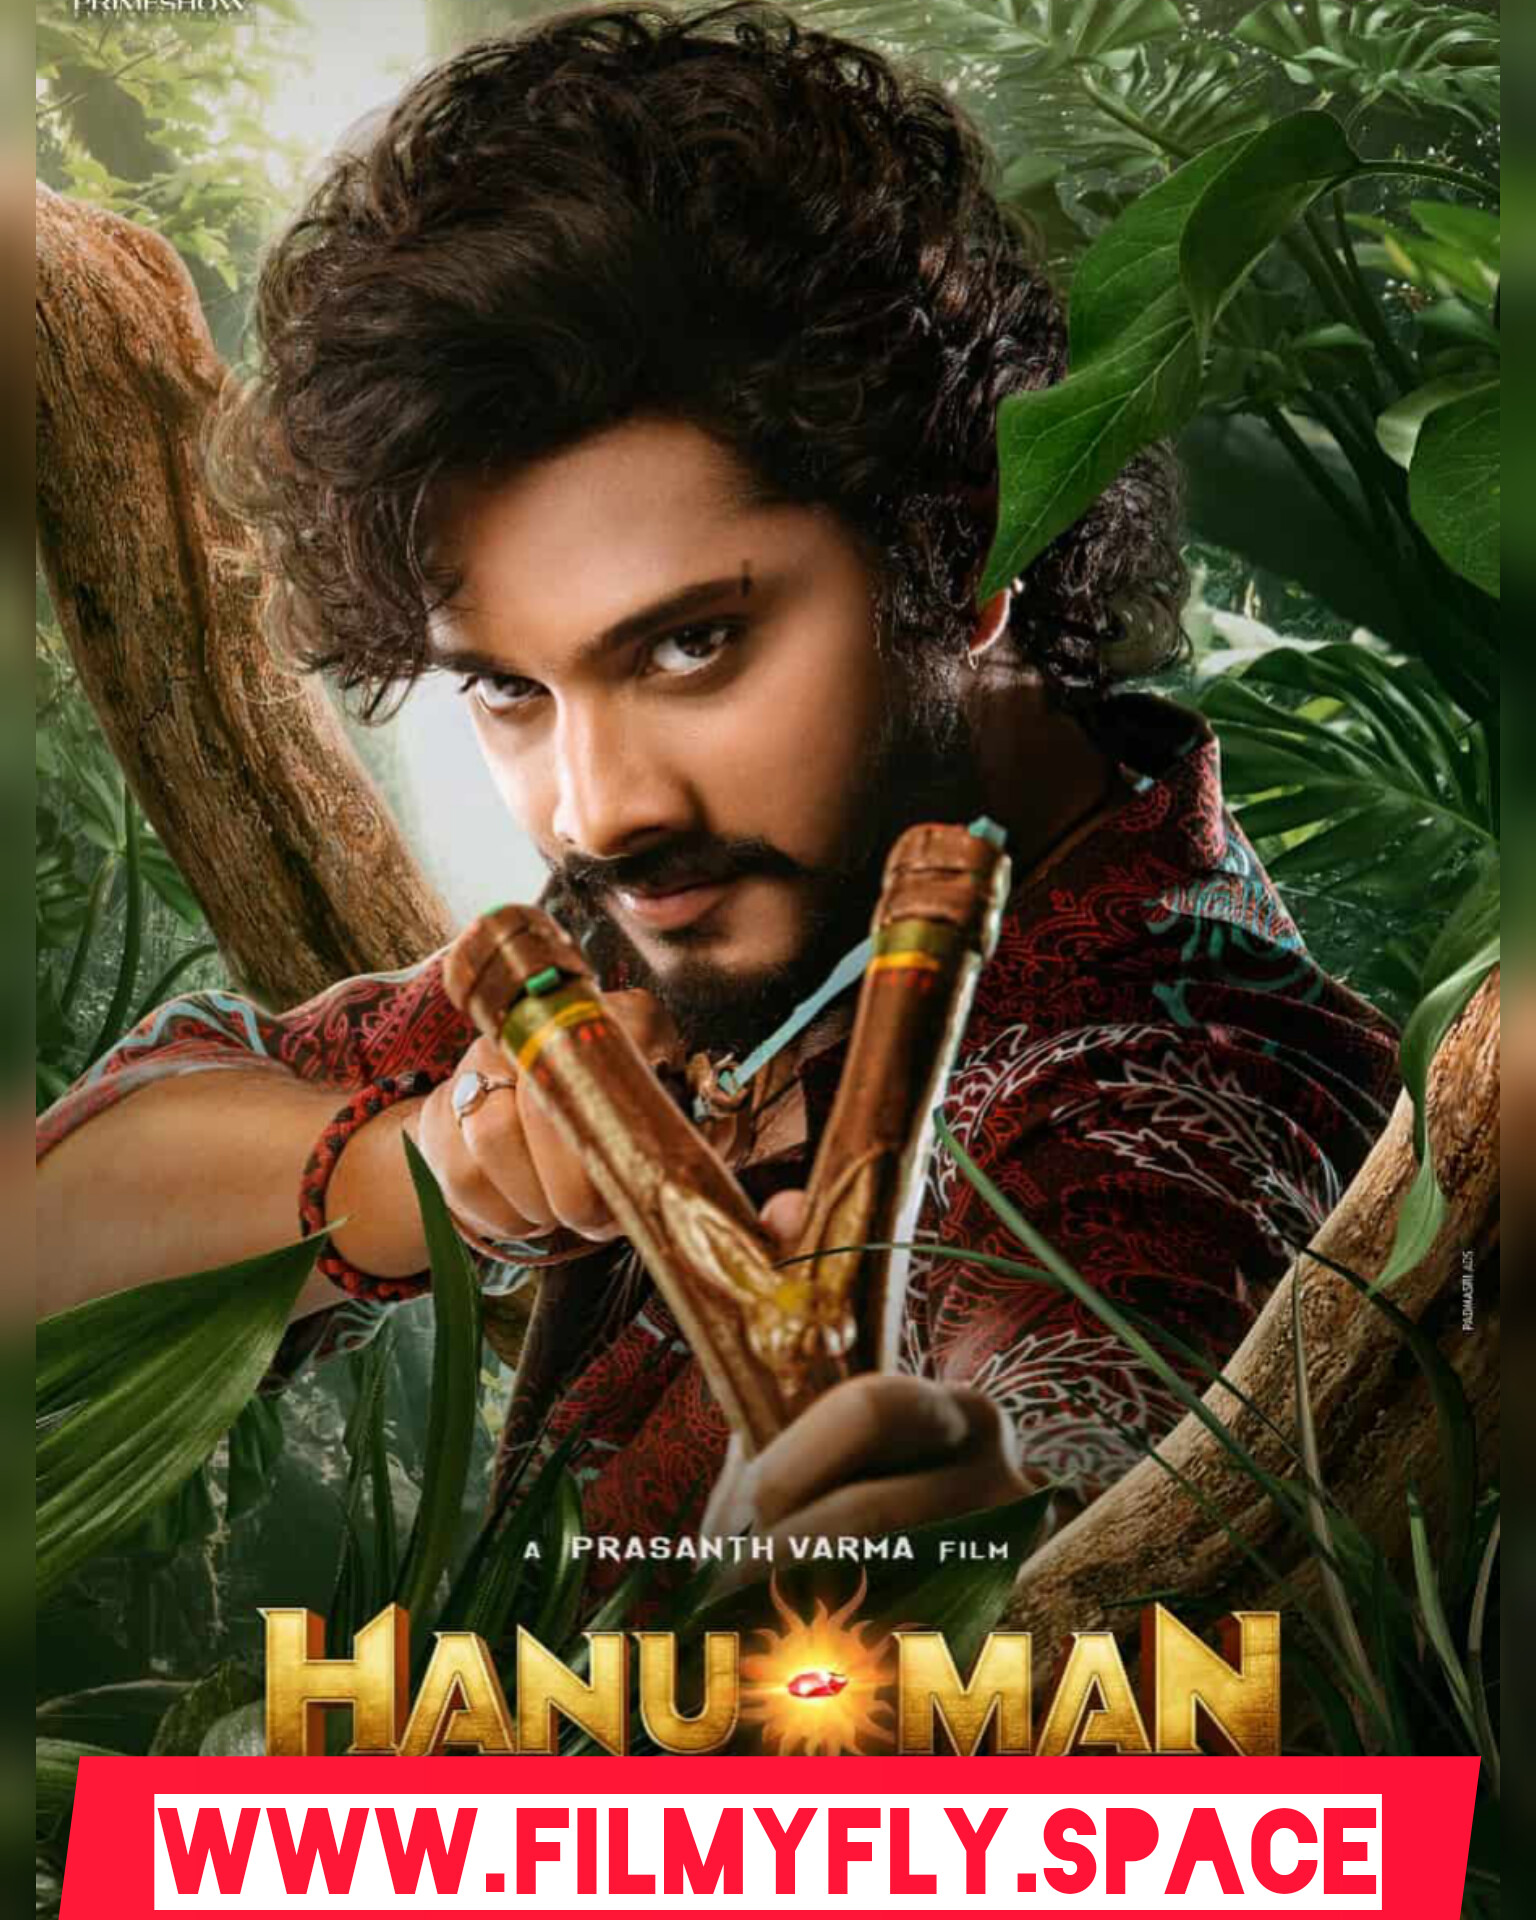 HanuMan Movie Box Office Collection Day 14: जानिए कितना पीछे है महेश बाबू की फिल्म गुंटूर कारम